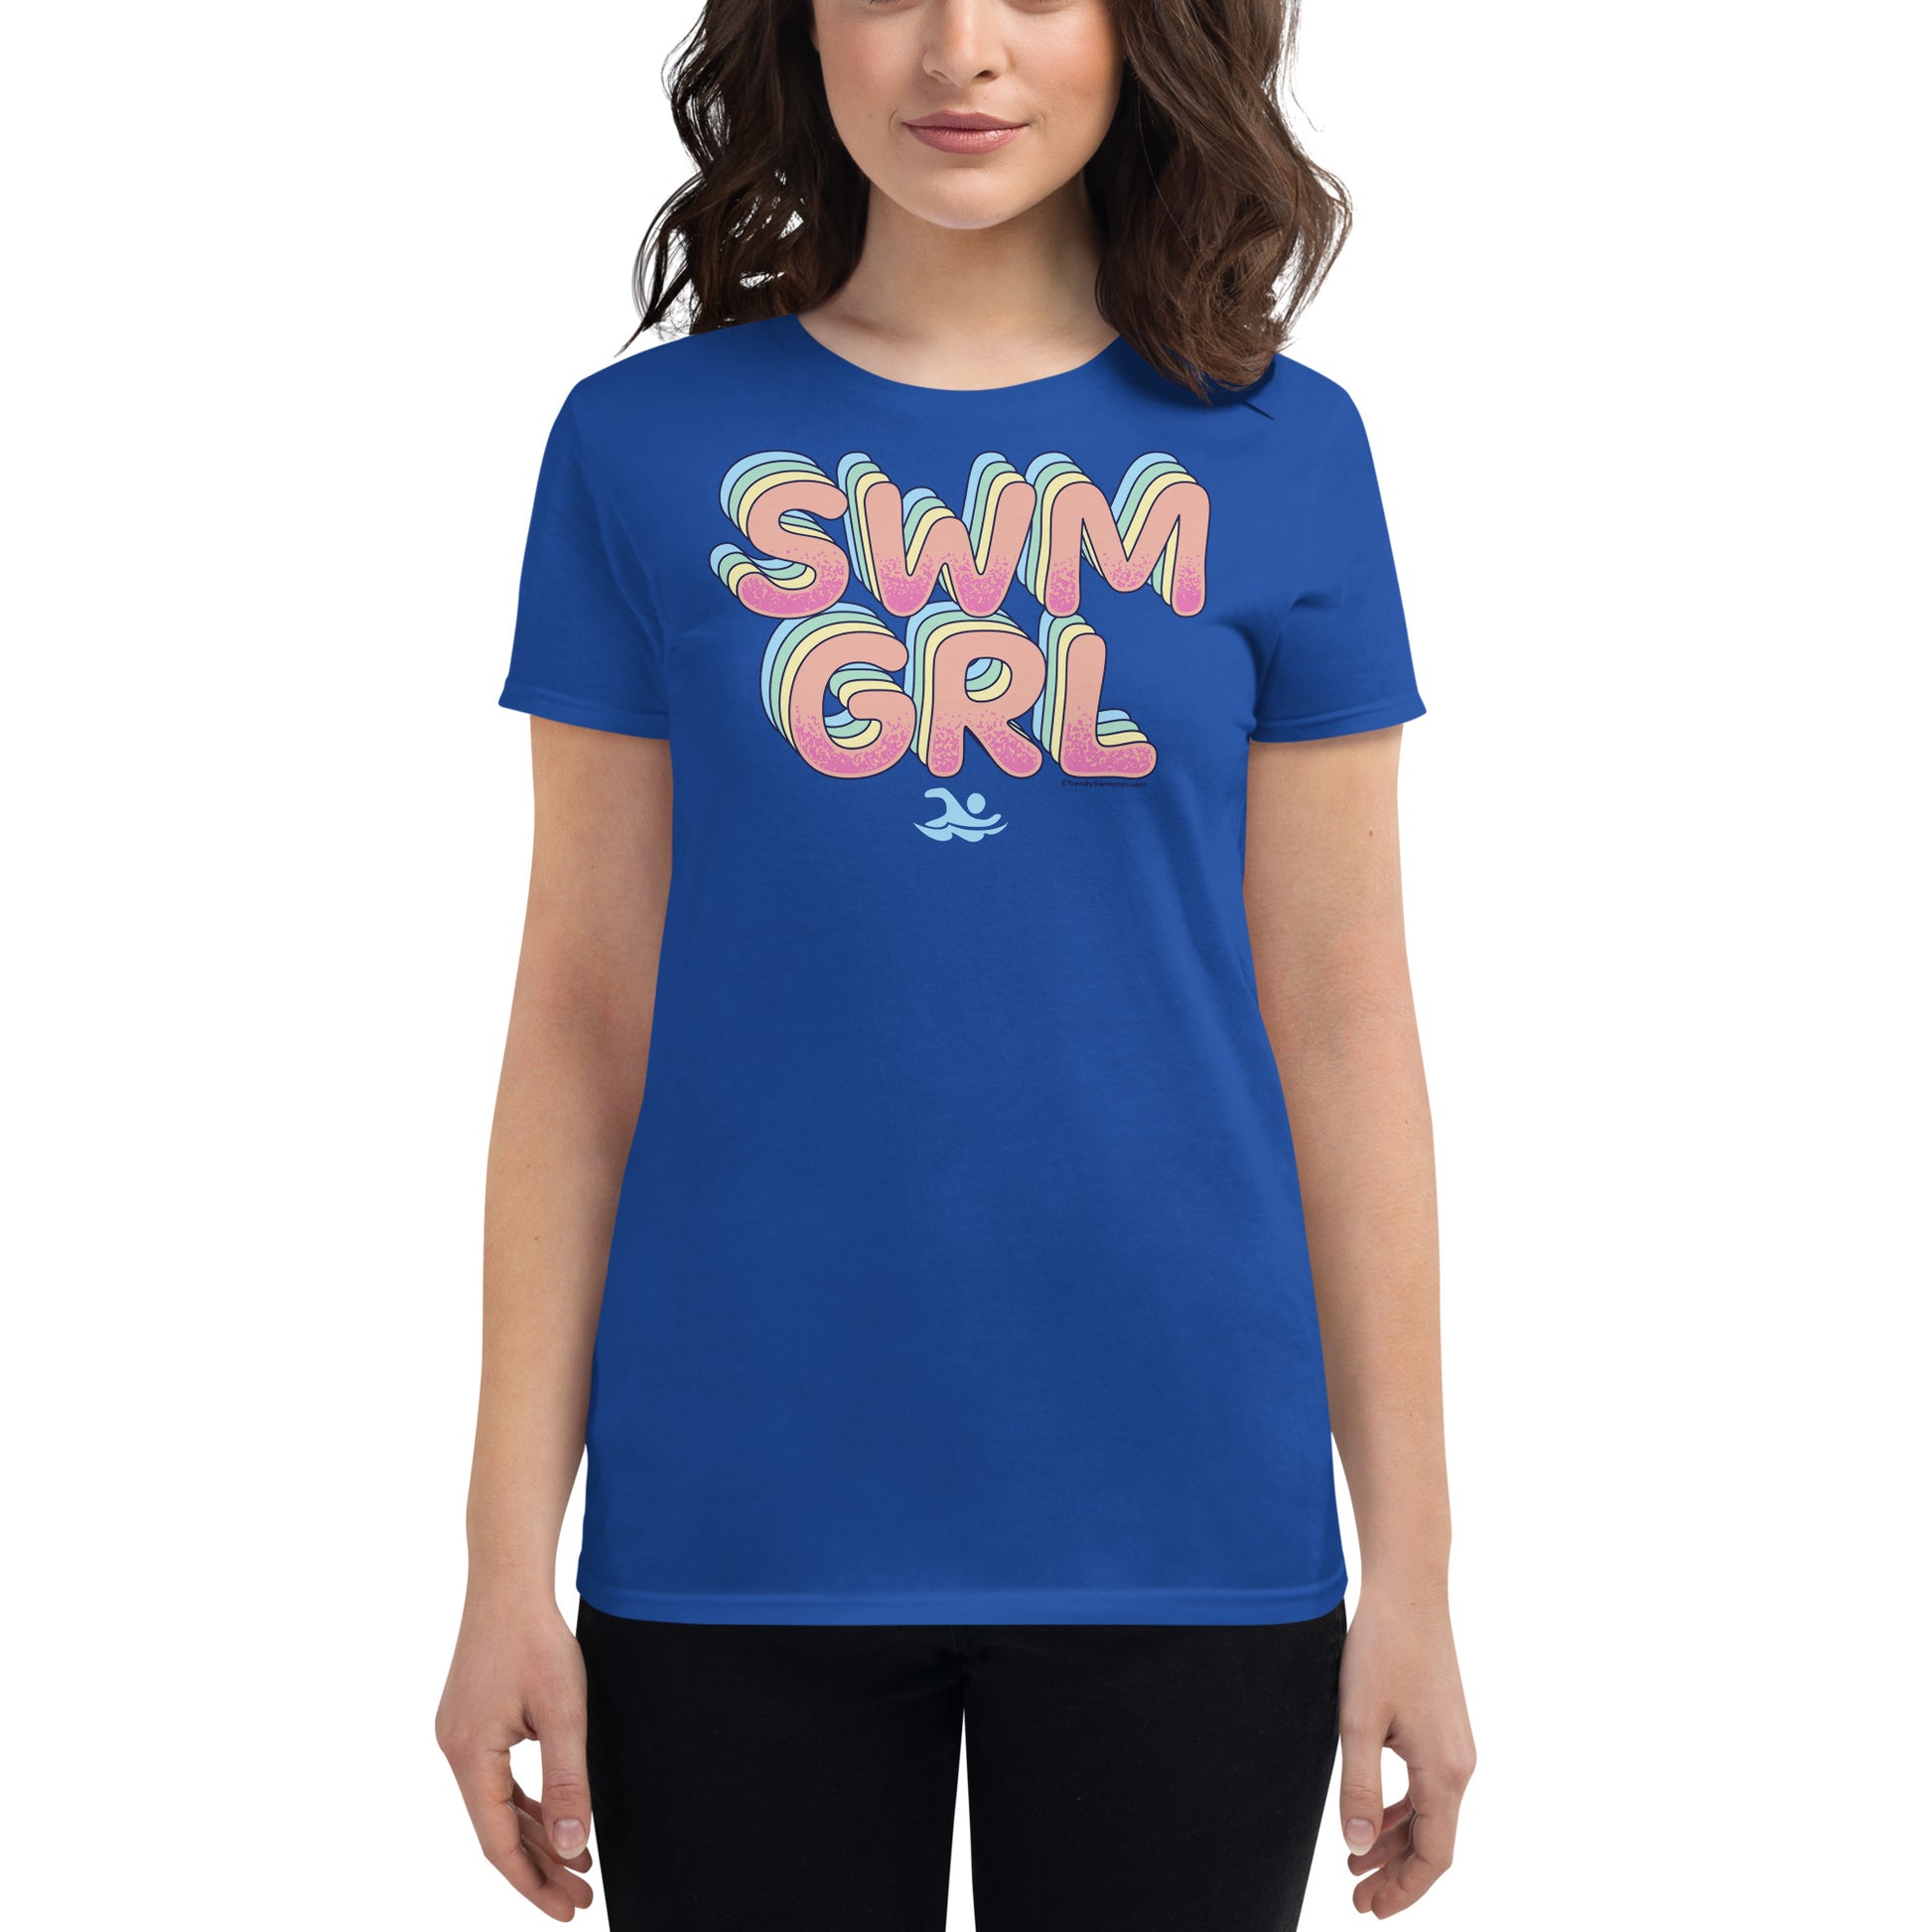 SWM GRL Swim Girl Women's Short Sleeve T Shirt - TrendySwimmer